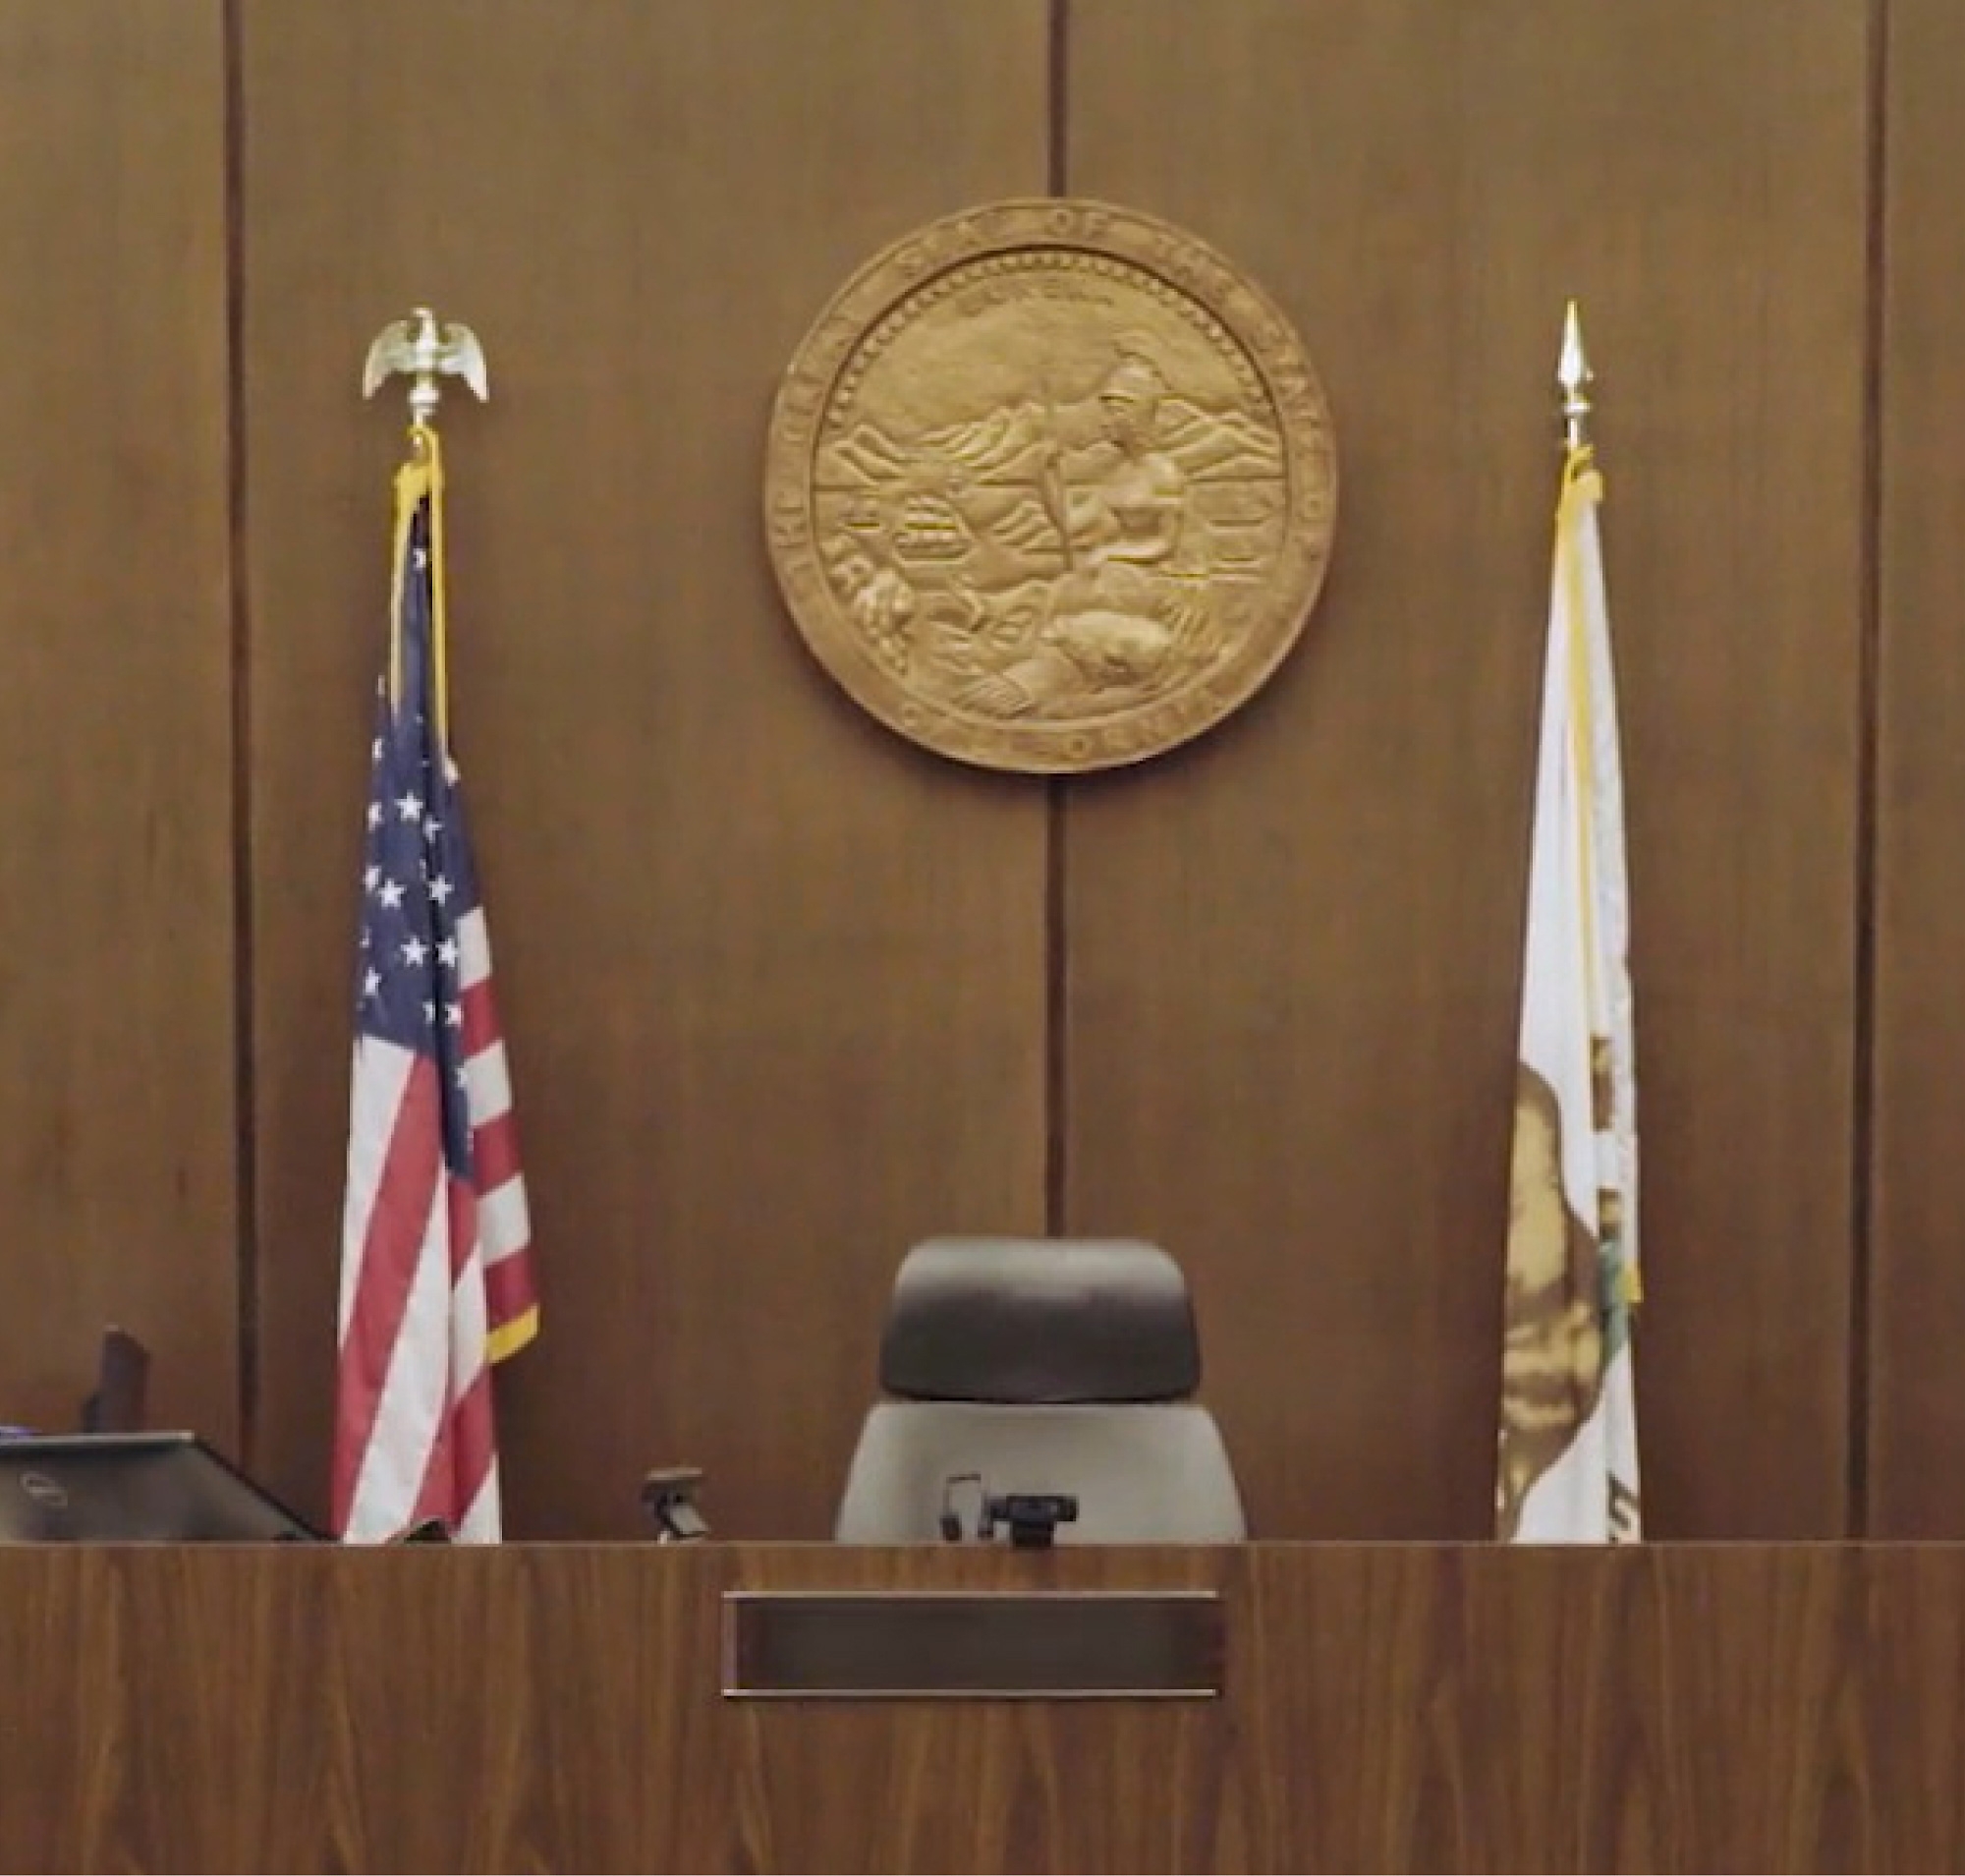 Un fauteuil vide de juge avec le sceau de l’état au mur et entouré des drapeaux américains et de l’état dans une salle d’audience.